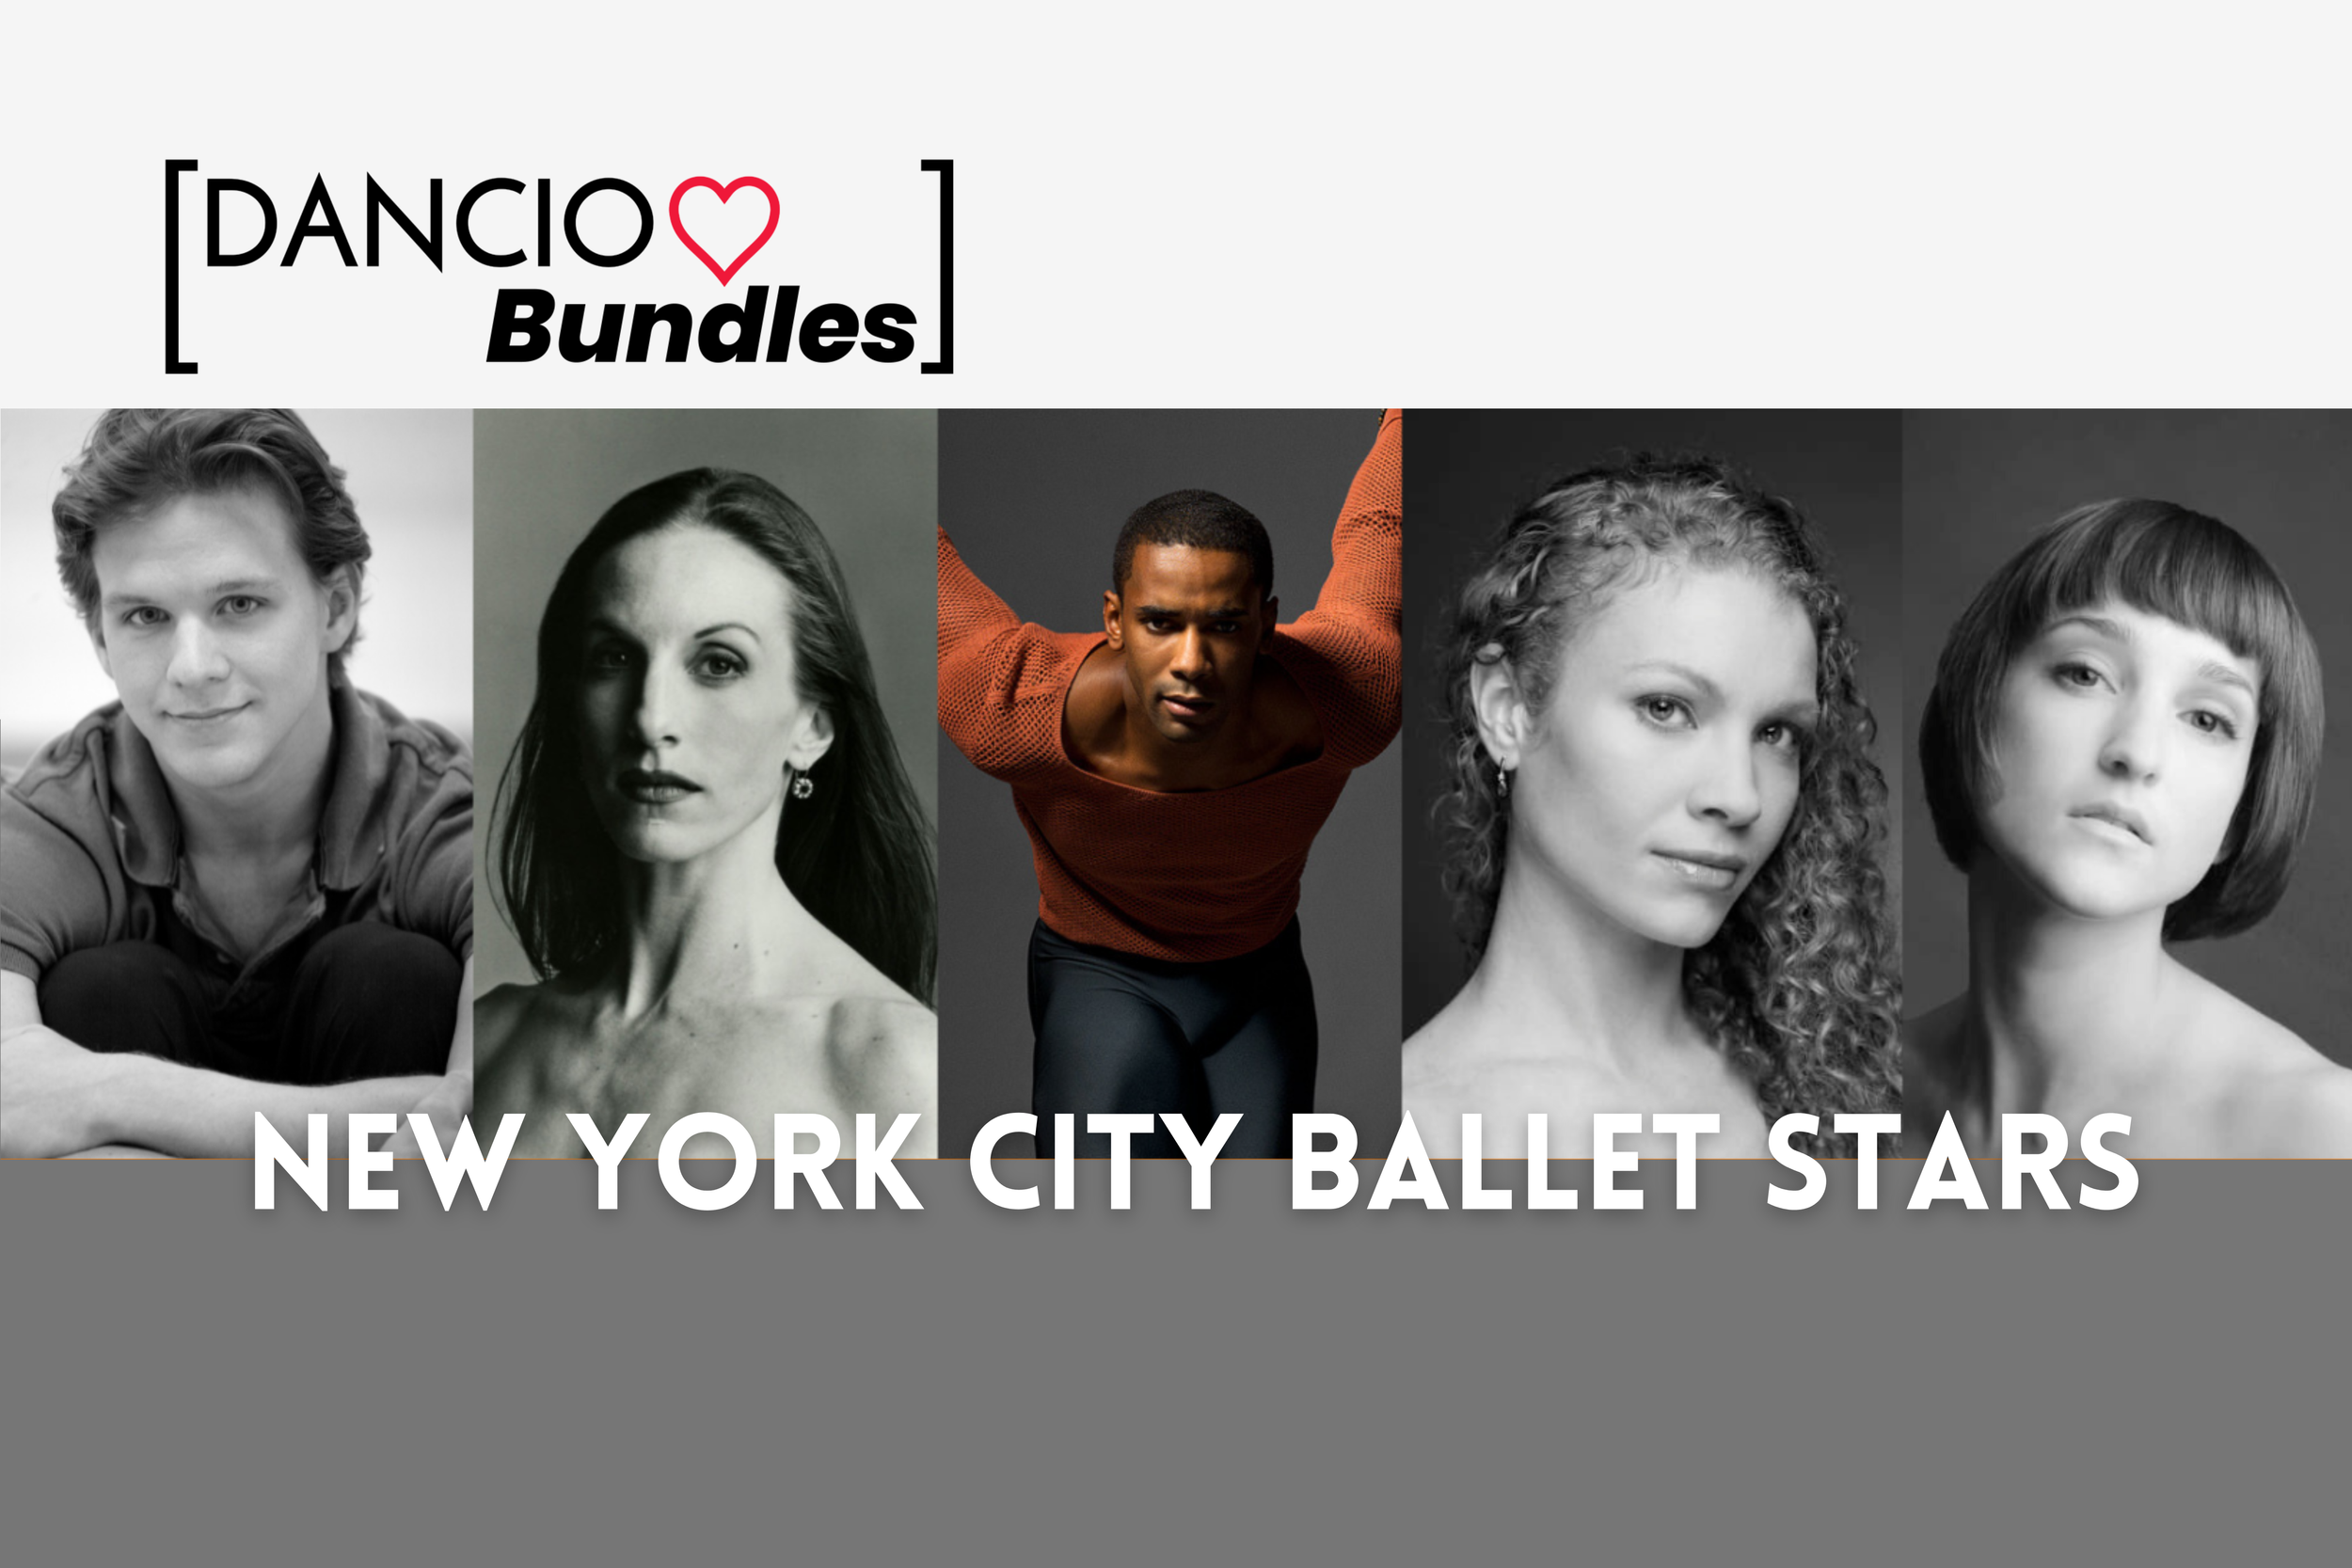 New York City Ballet Stars